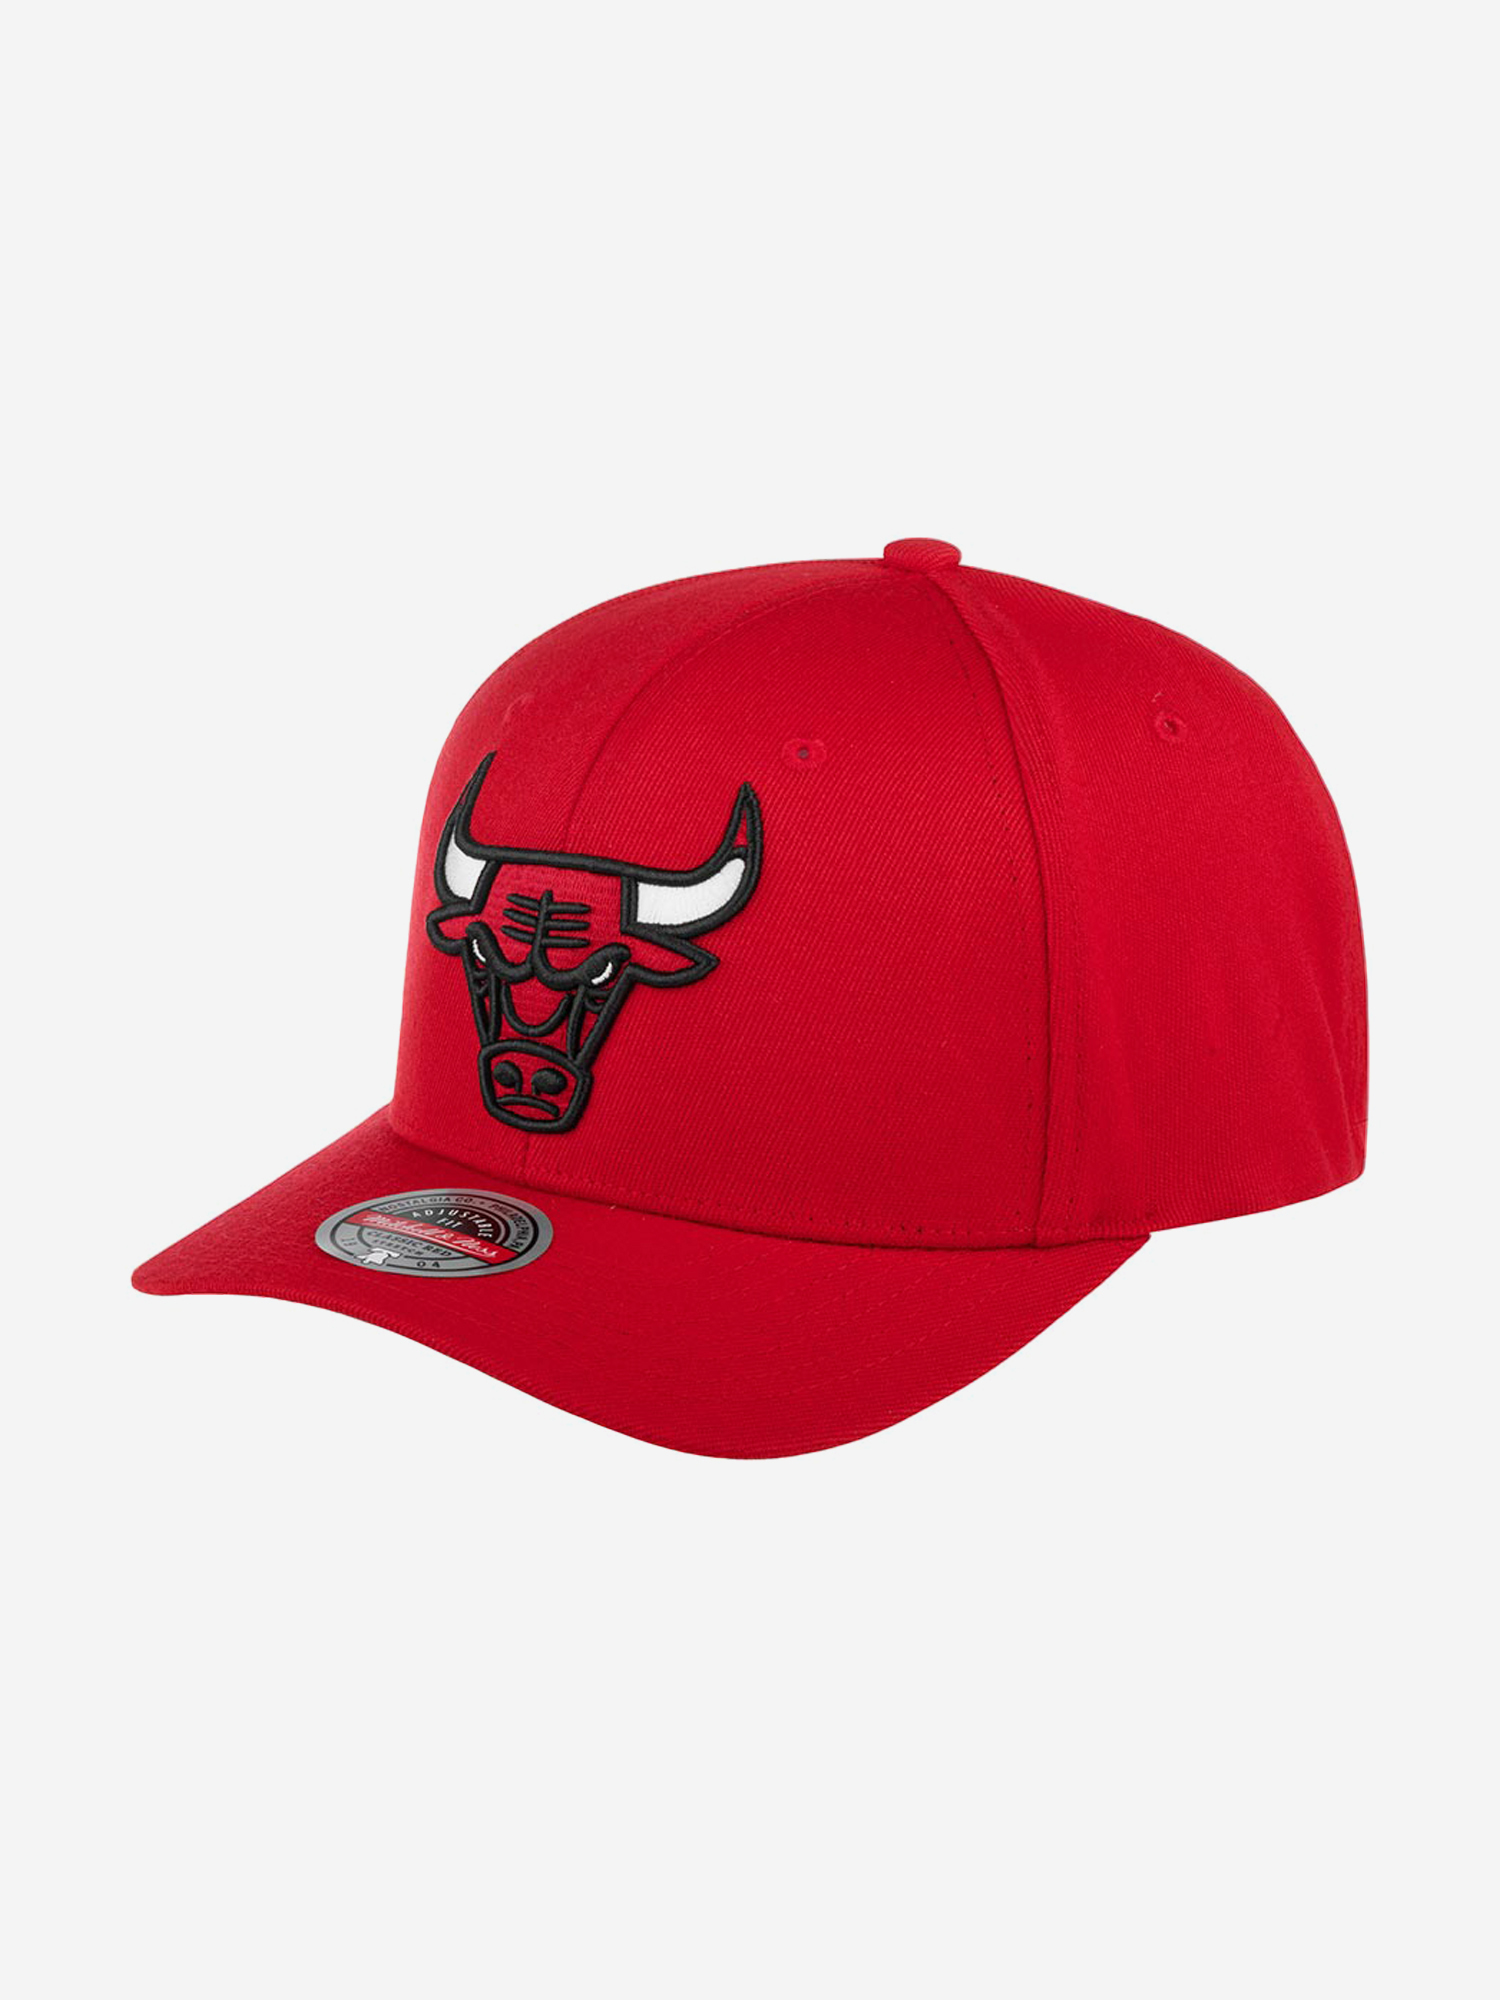 Бейсболка MITCHELL NESS HHSS3257-CBUYYPPPRED1 Chicago Bulls NBA (красный), Красный палатка трекинговая klymit cross canyon 4 09c4rd01d красно серая красный